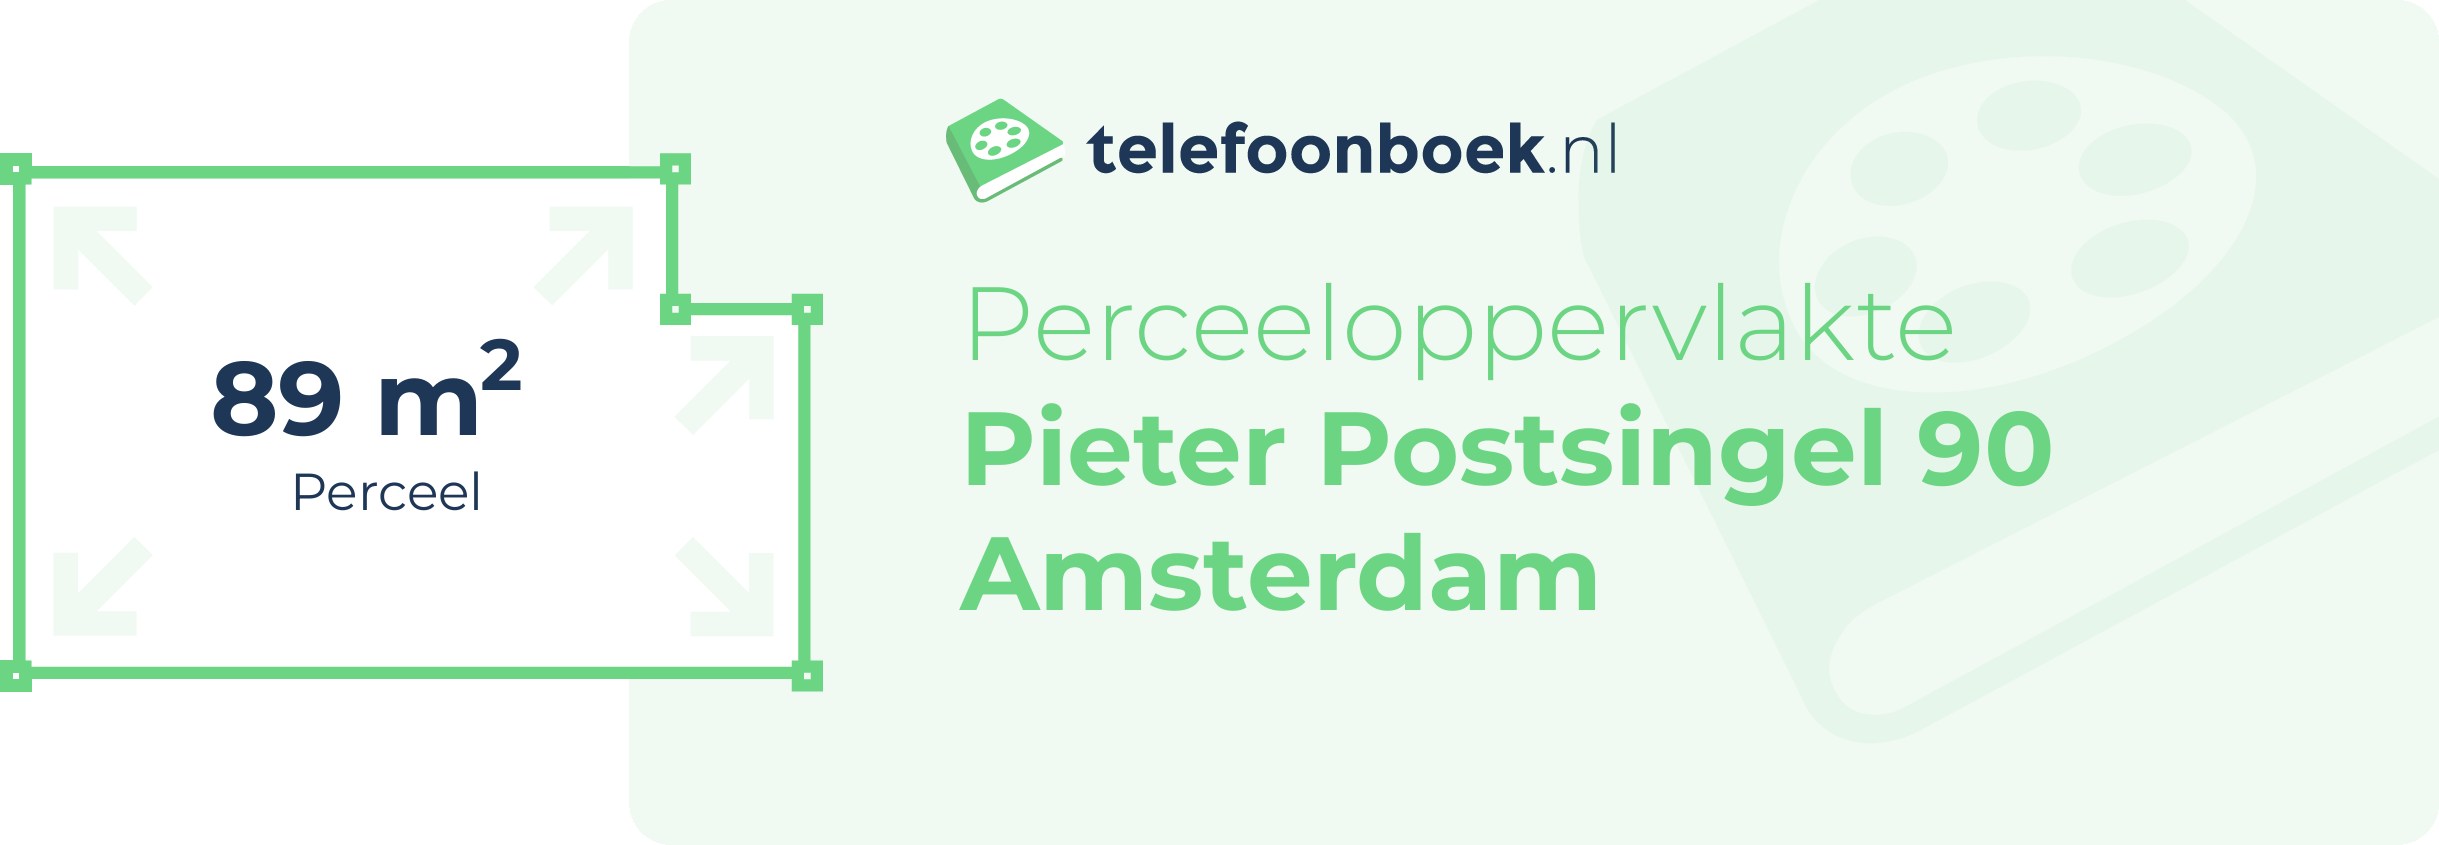 Perceeloppervlakte Pieter Postsingel 90 Amsterdam